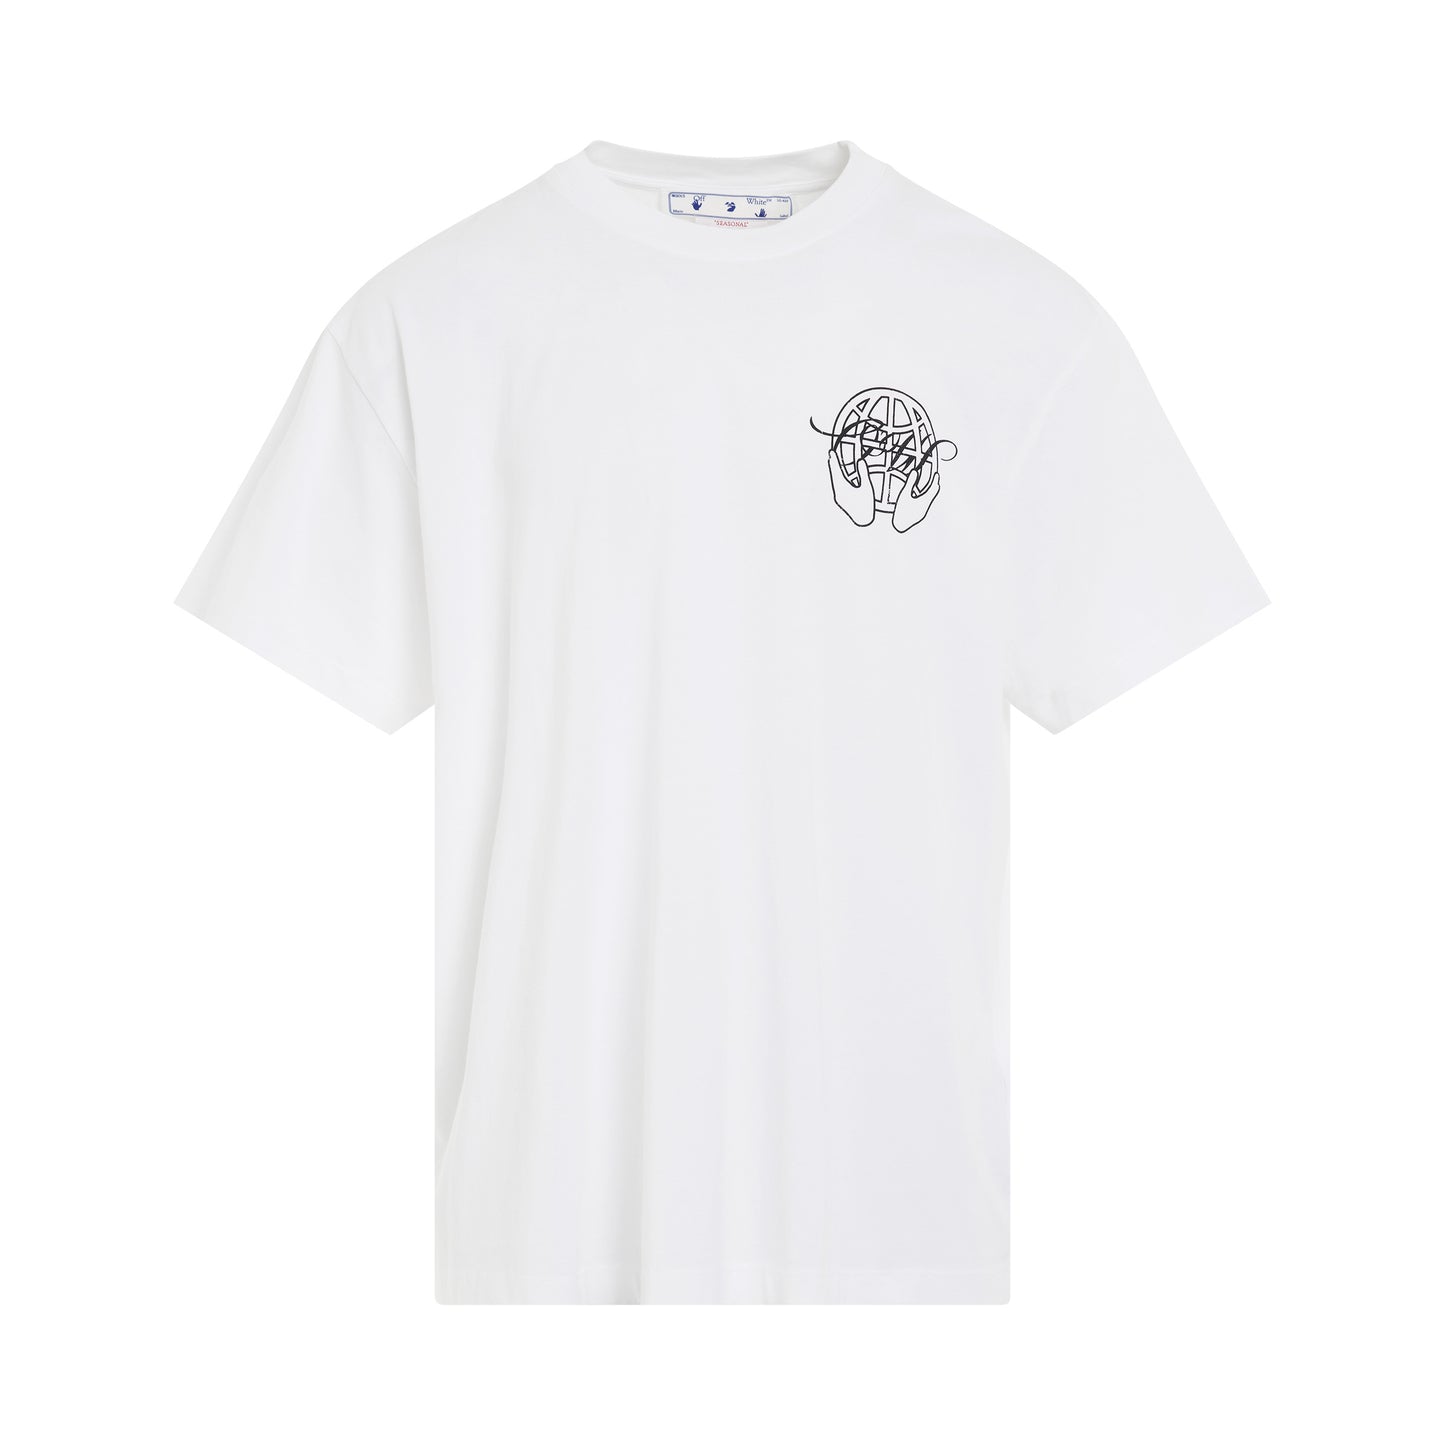 Hand Arrow Oversized Short Sleeve T-Shirt in White/Black